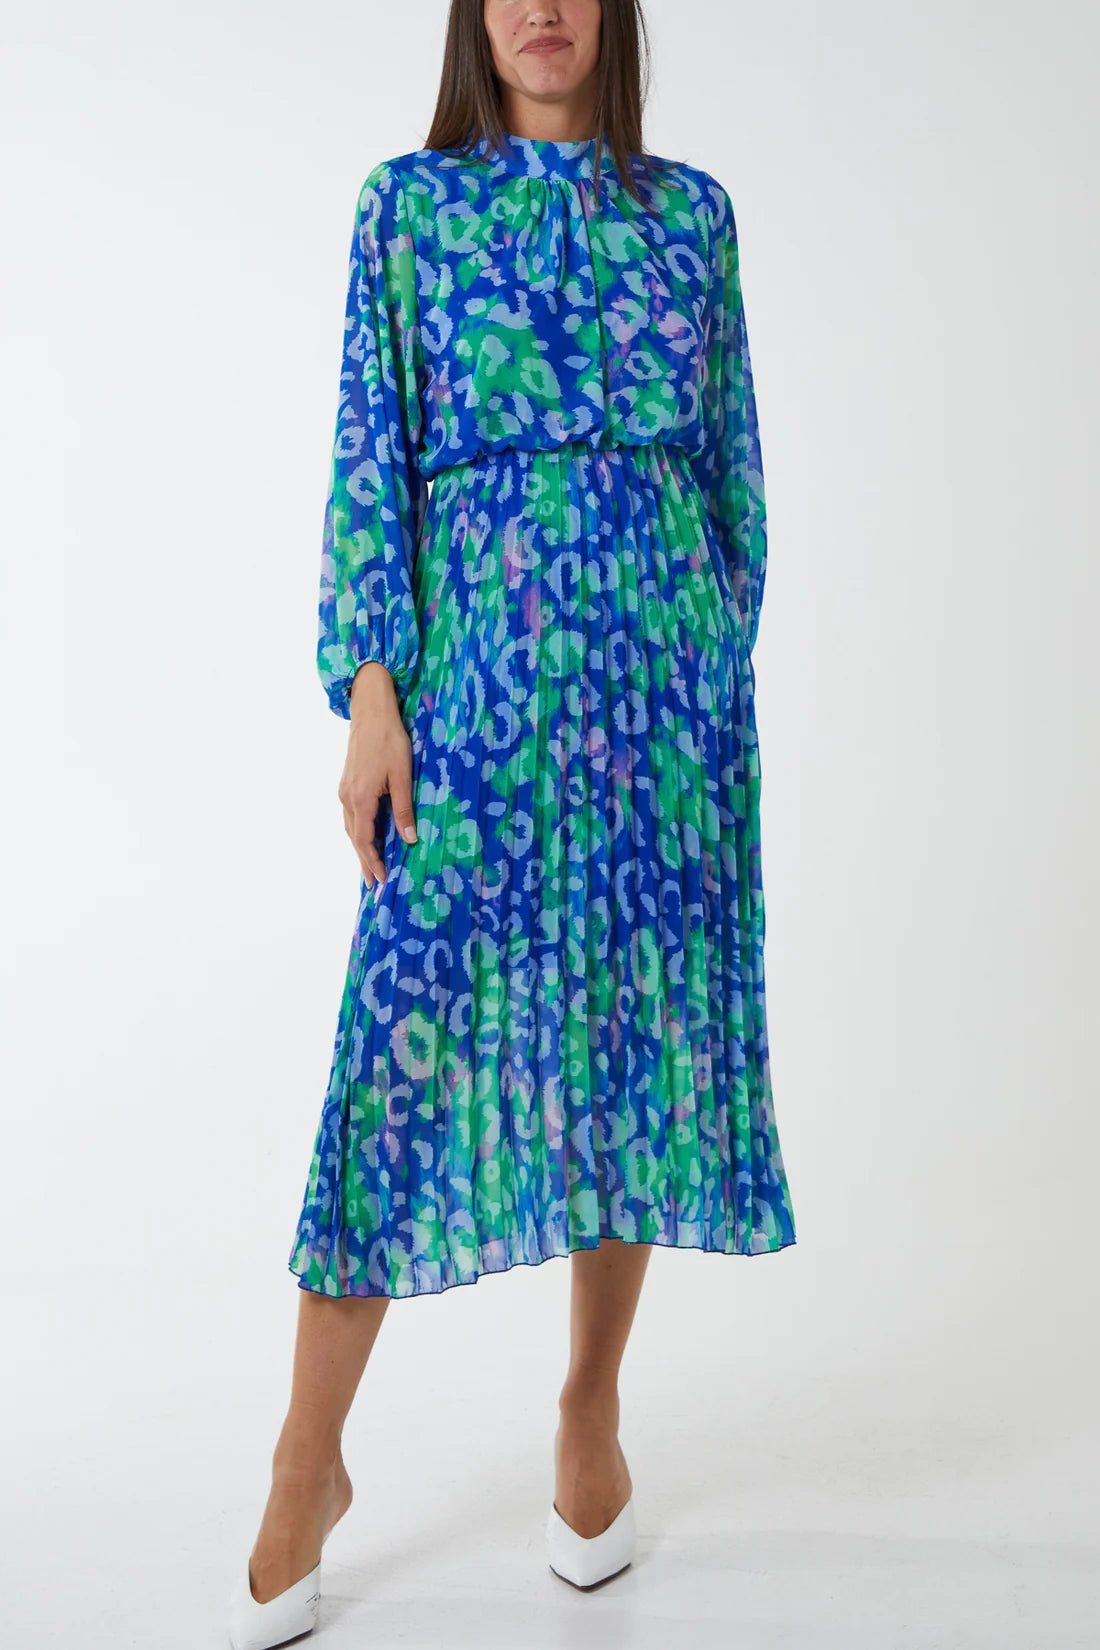 Mila - High Neck Leopard Print Midi Pleated Dress - Pinstripe